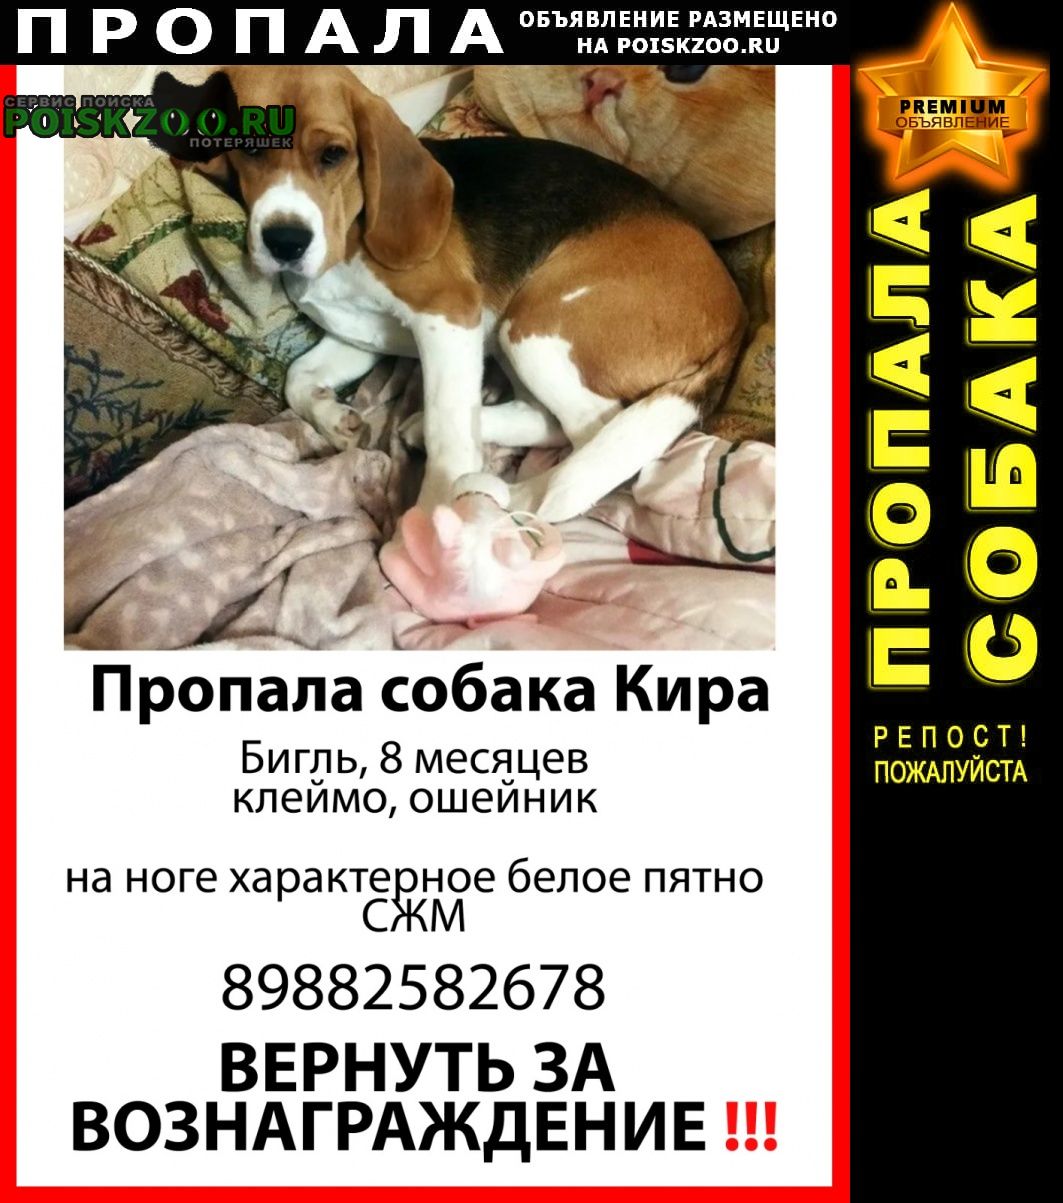 Ростов-на-Дону Пропала собака бигль девочка 8 месяцев сжм